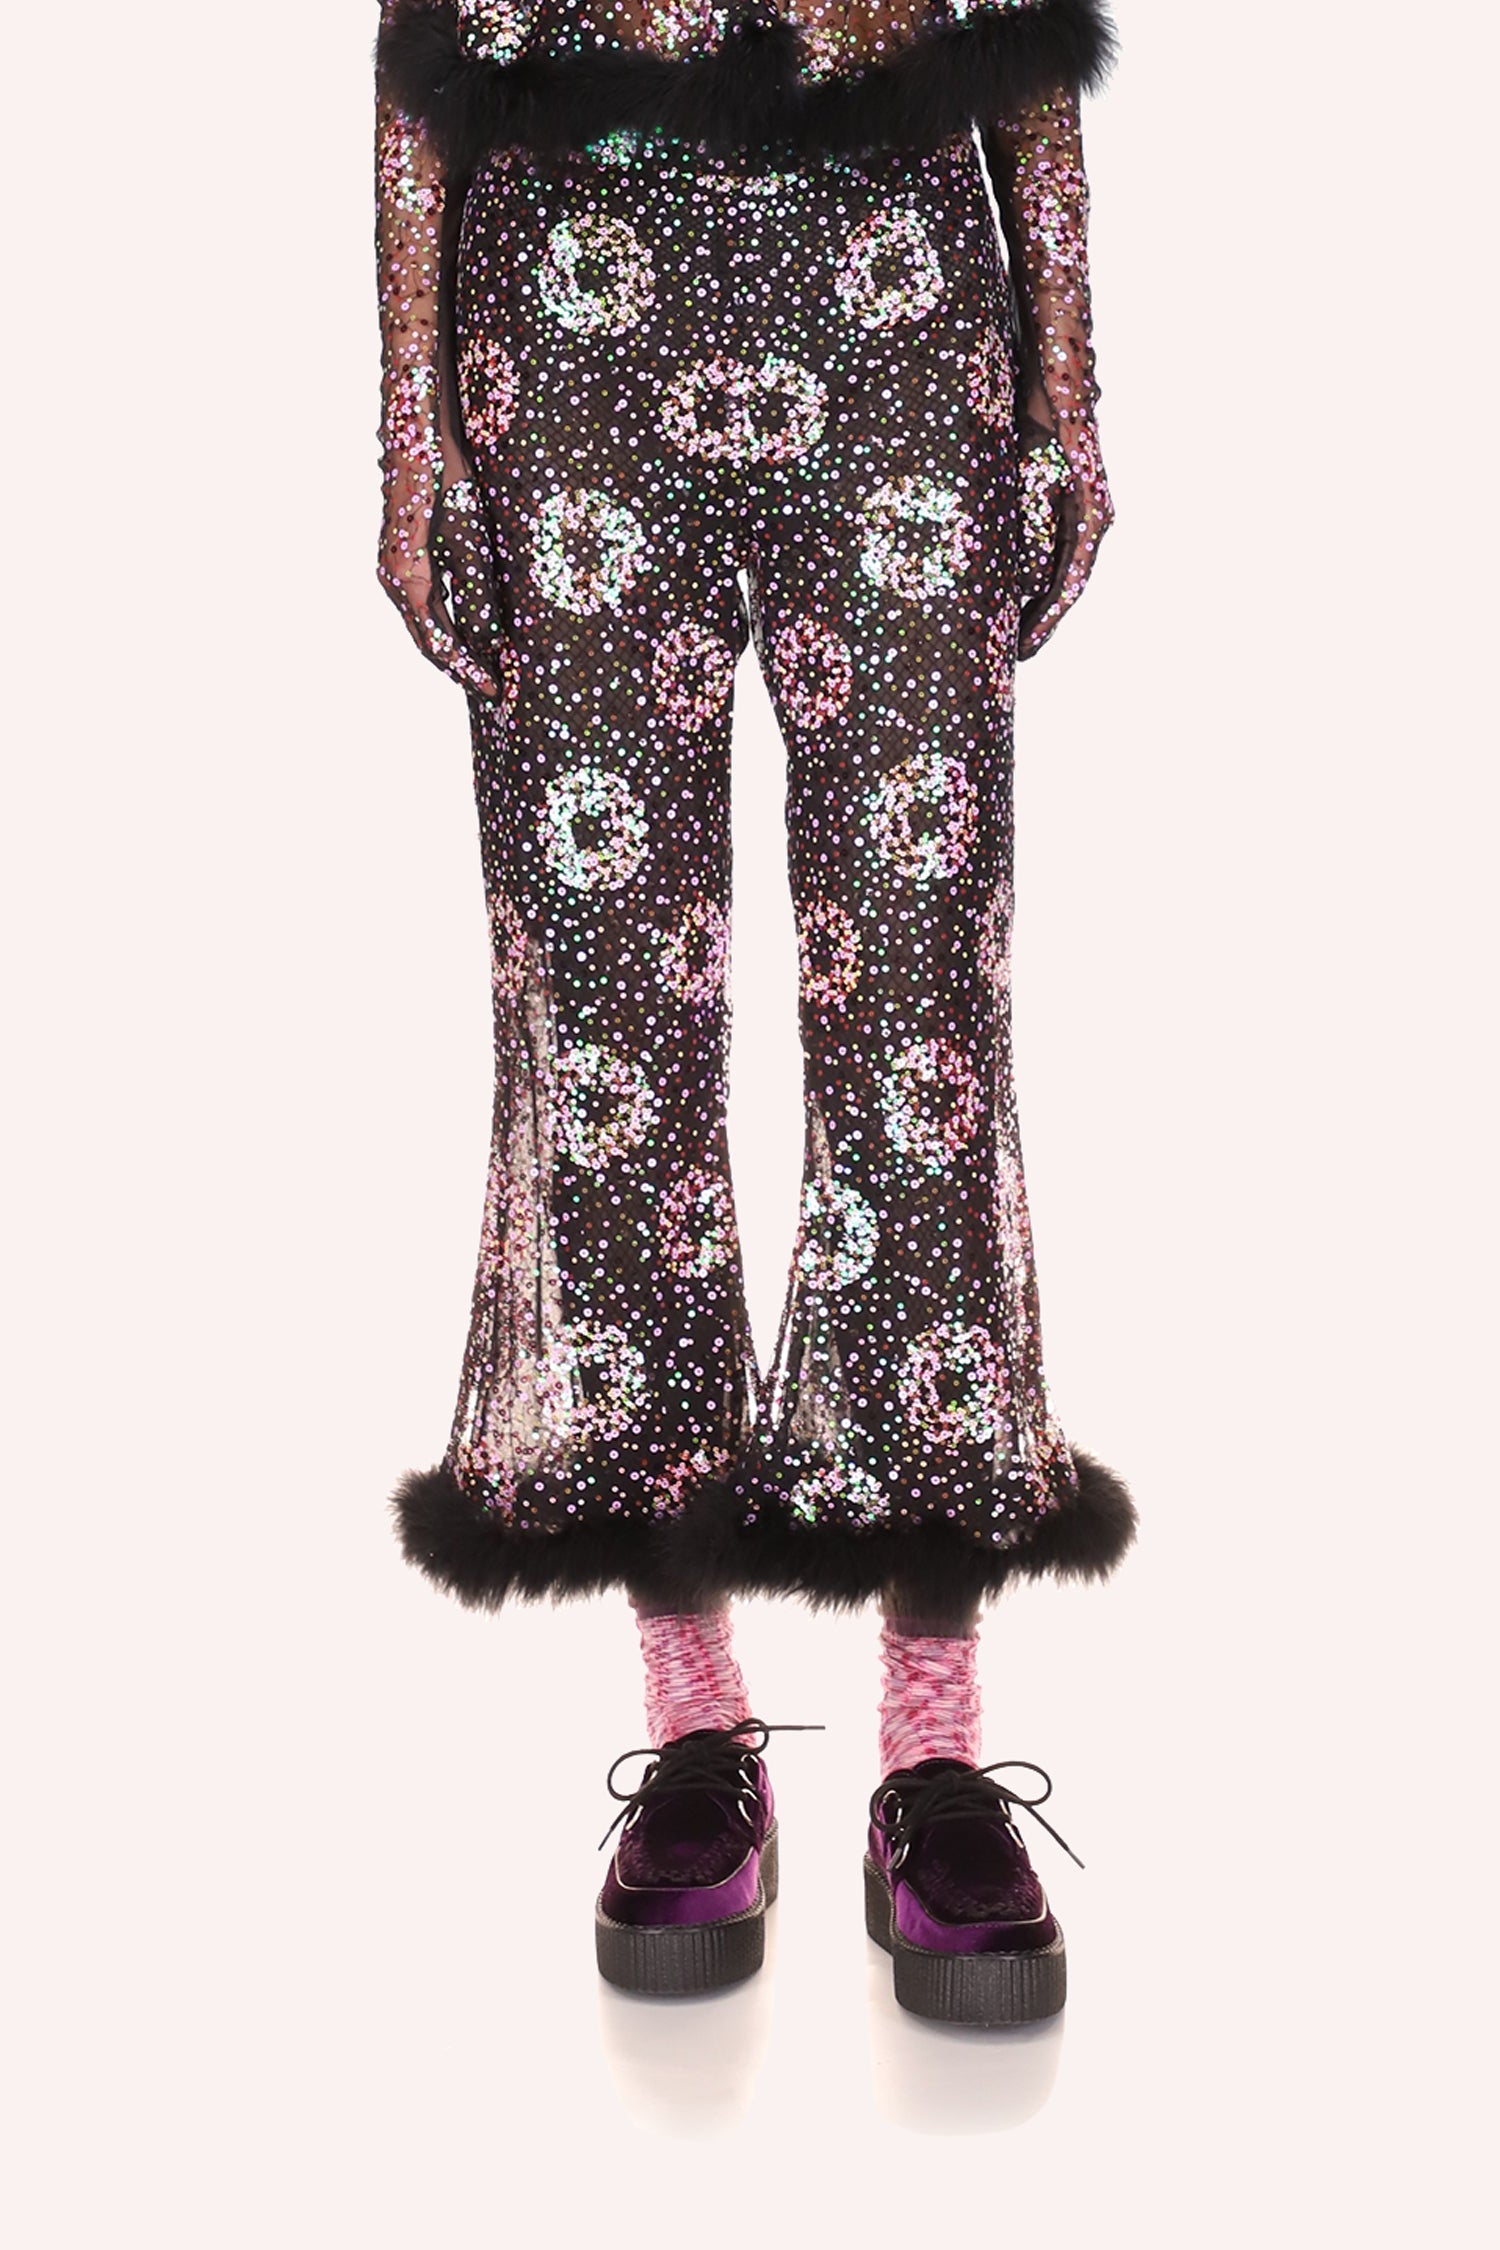 Sparkler Sequins Pants Lavender, above ankles, bell-bottoms shape, fluffy faux fur a bottom hem